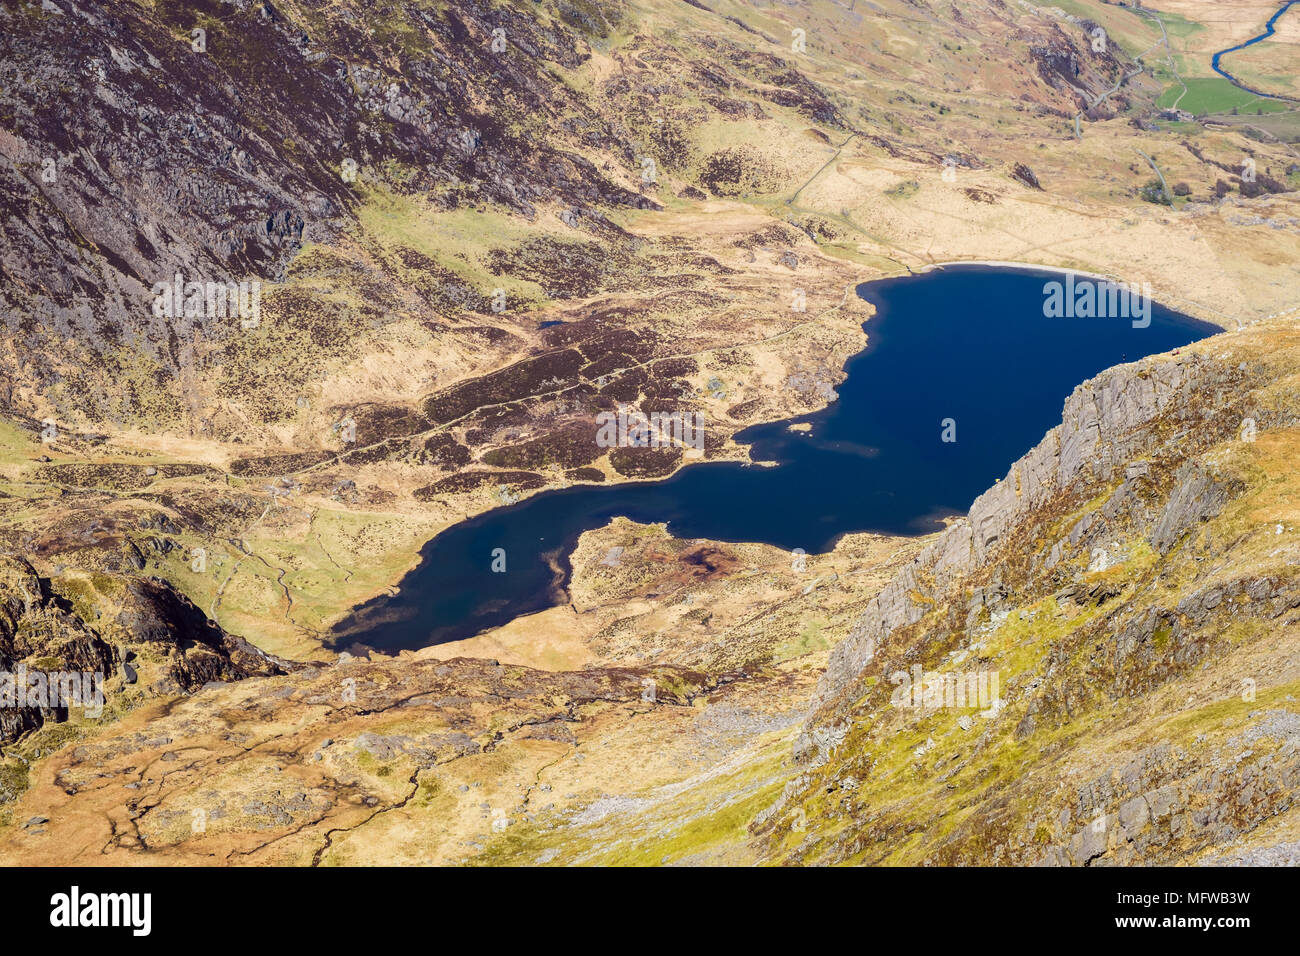 Cneifion Arete crag rock Scramble mit Kletterer Klettern bis zu Y Llyn Idwal Gribin Grat über See in Snowdonia National Park. Ogwen Wales UK Großbritannien Stockfoto